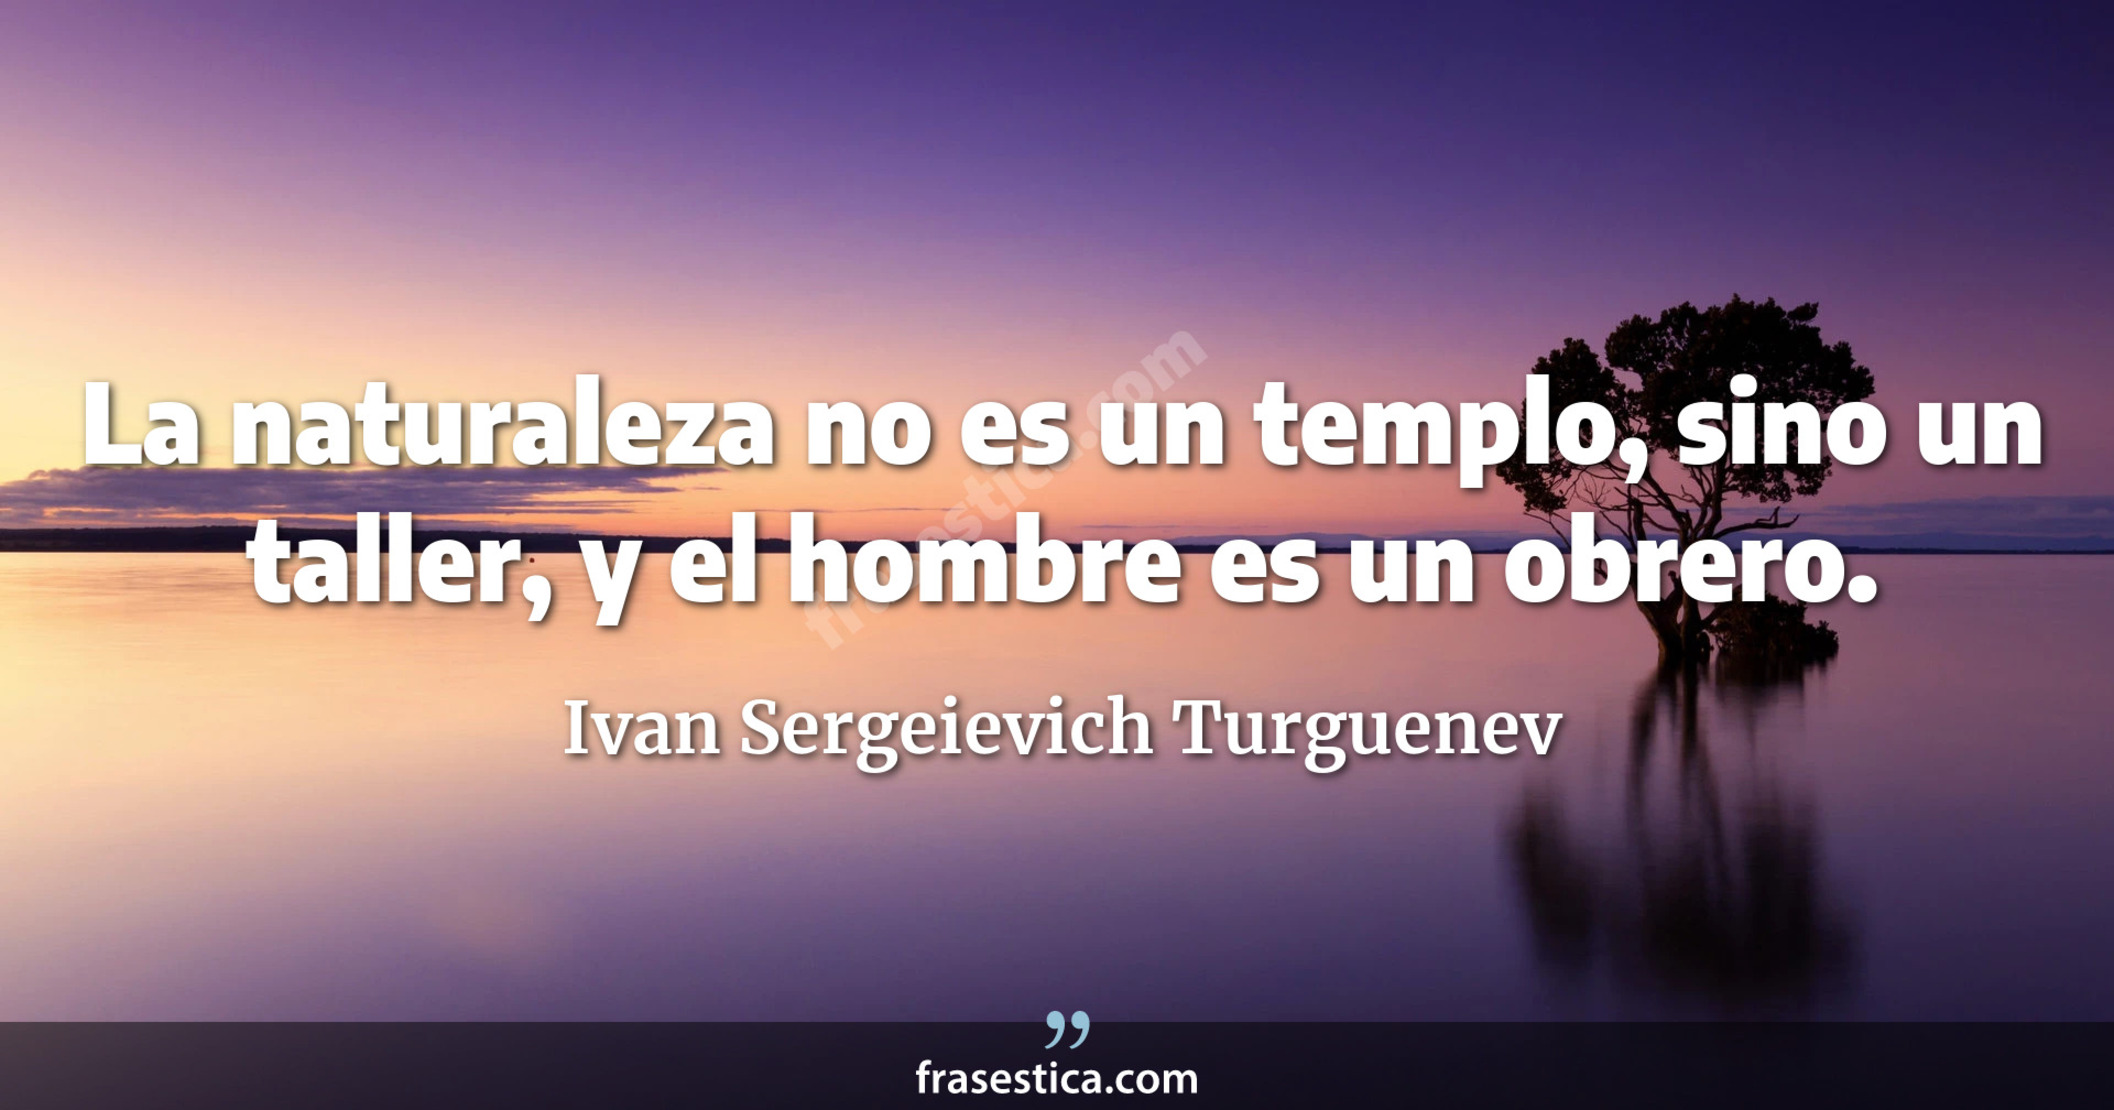 La naturaleza no es un templo, sino un taller, y el hombre es un obrero. - Ivan Sergeievich Turguenev